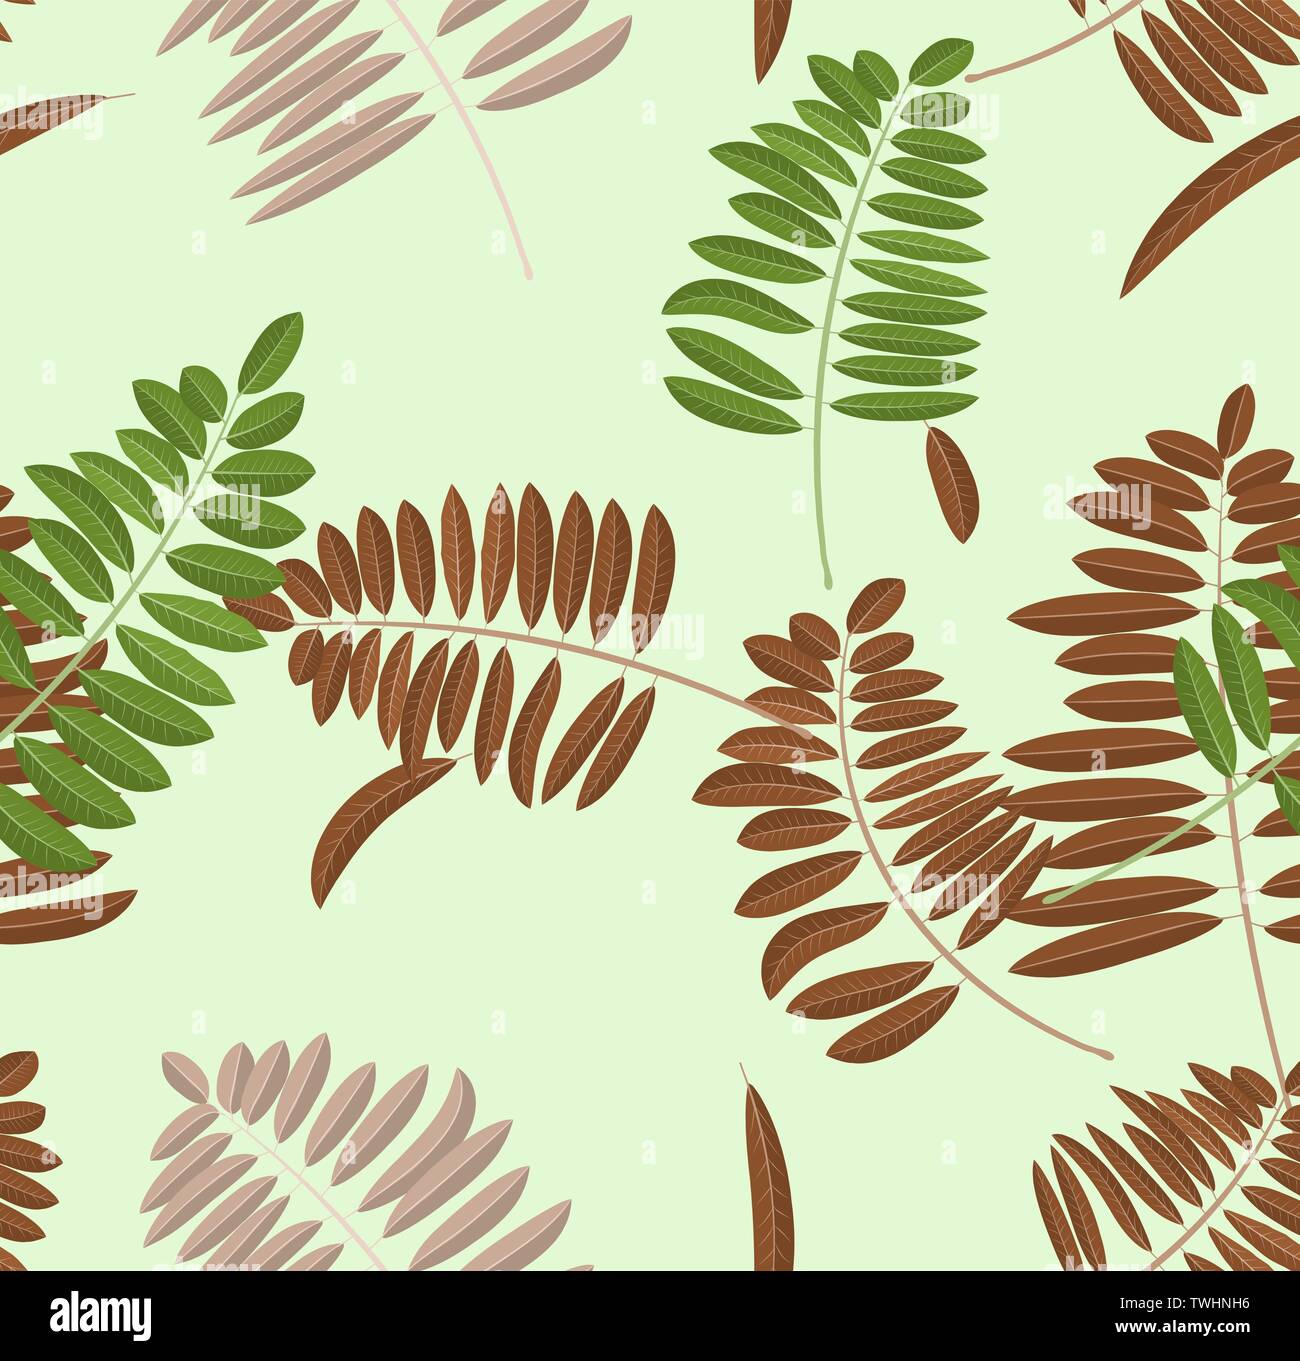 Automne feuilles acacia modèle homogène. Fond vert clair pastel et banc avec green, broun et feuilles jaunes pour wallpapers Illustration de Vecteur